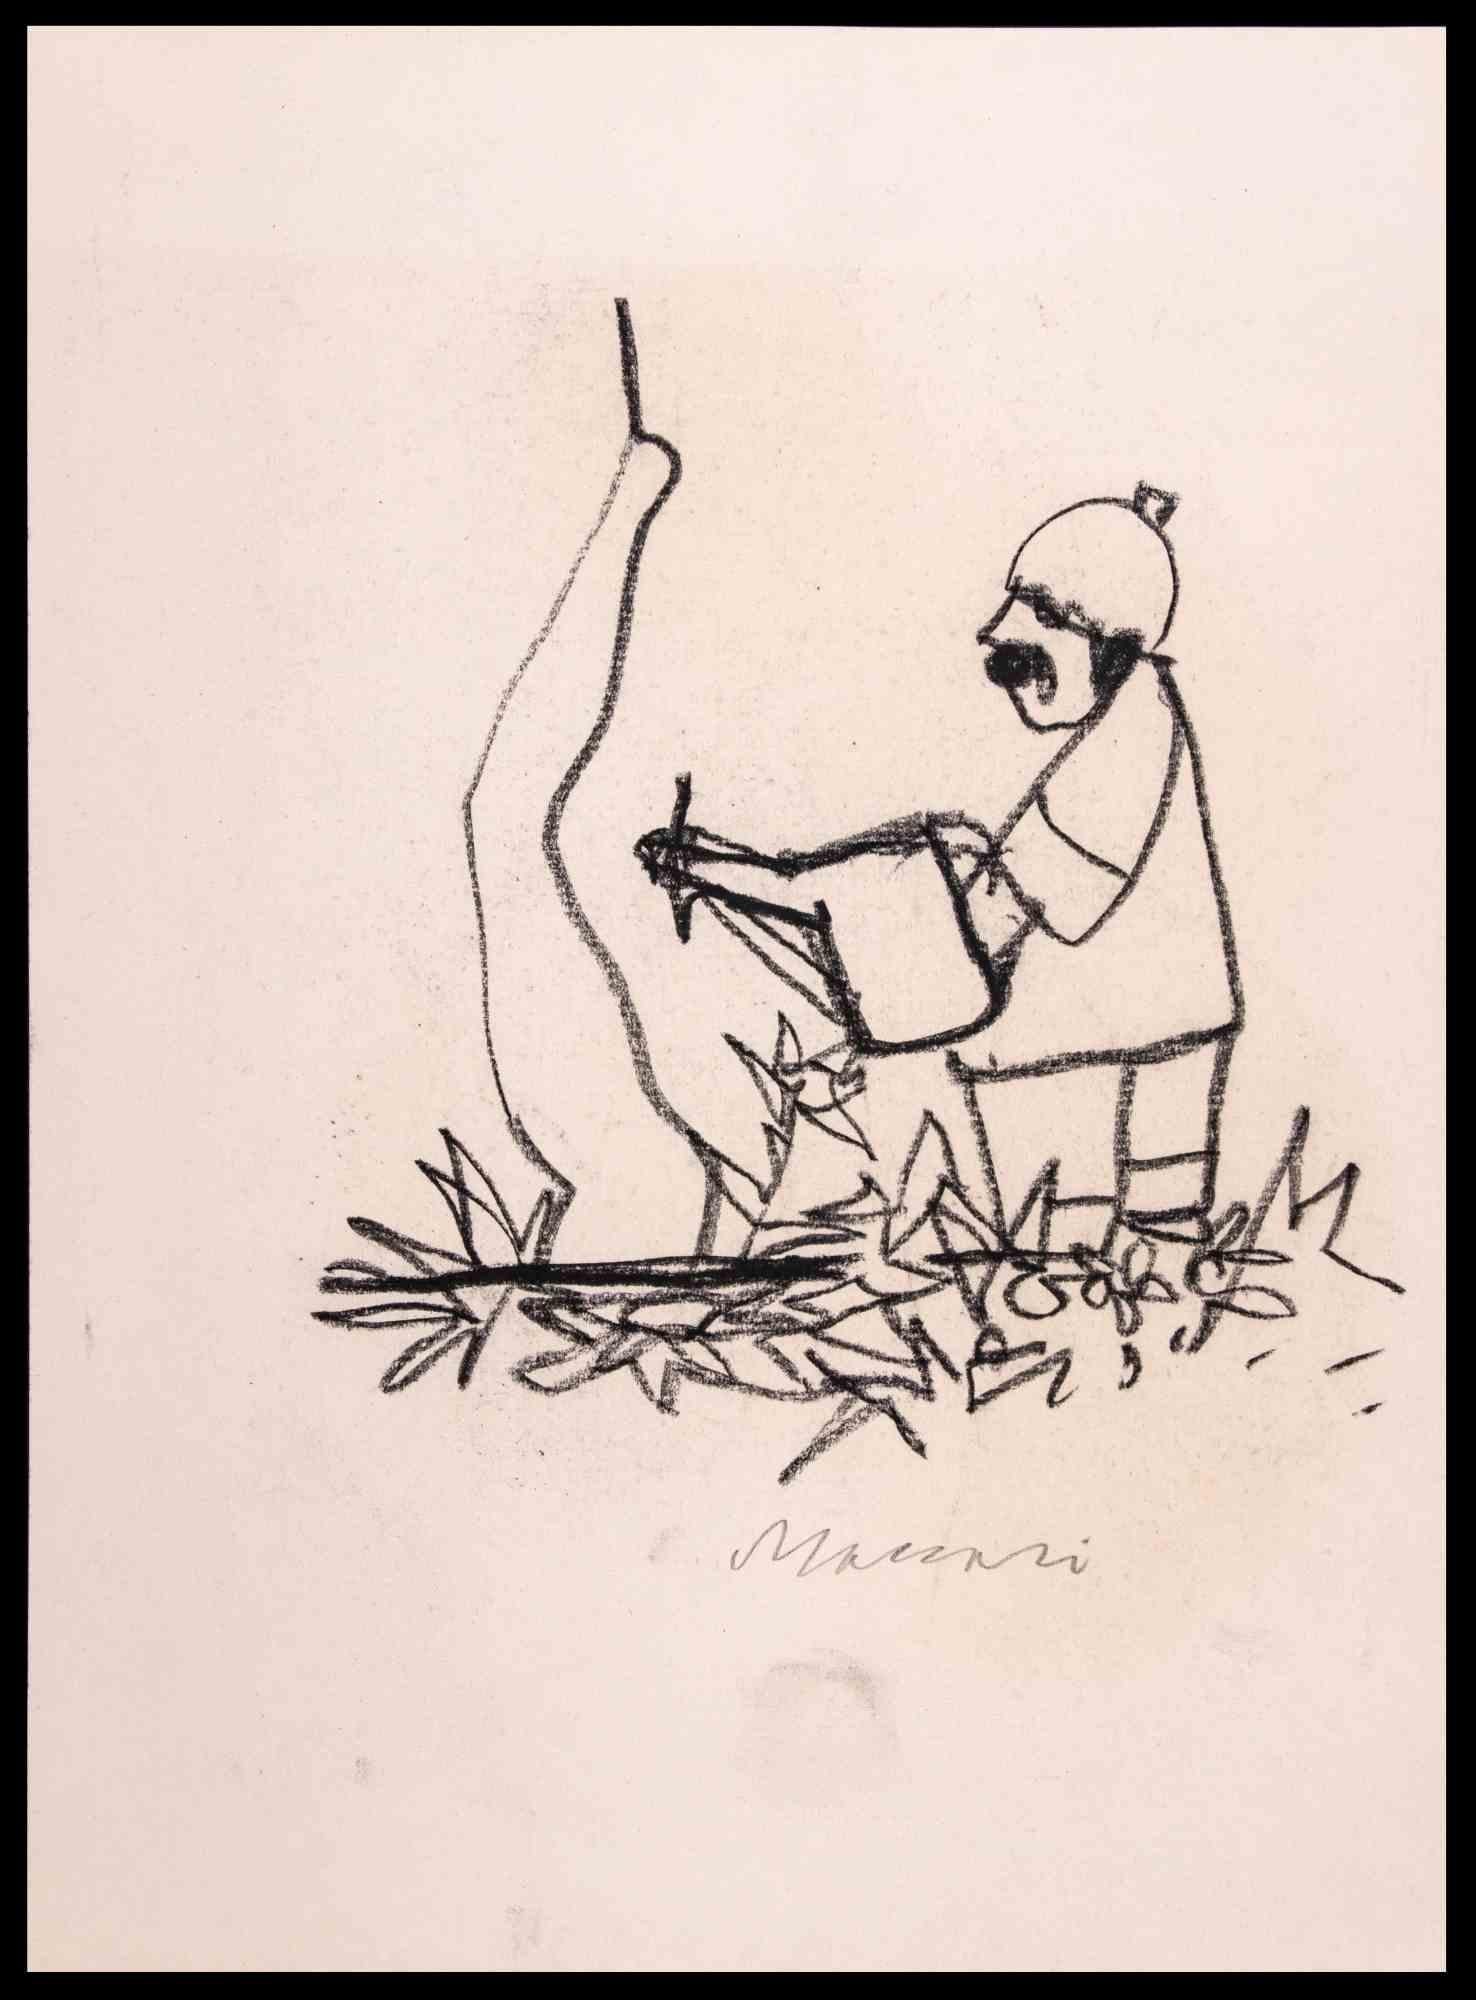 Gärtner ist eine Kohlezeichnung von Mino Maccari (1924-1989) aus den 1970er Jahren.

Am unteren Rand handsigniert und betitelt.

Guter Zustand auf einem cremefarbenen Papier.

Mino Maccari (Siena, 1924-Rom, 16. Juni 1989) war ein italienischer